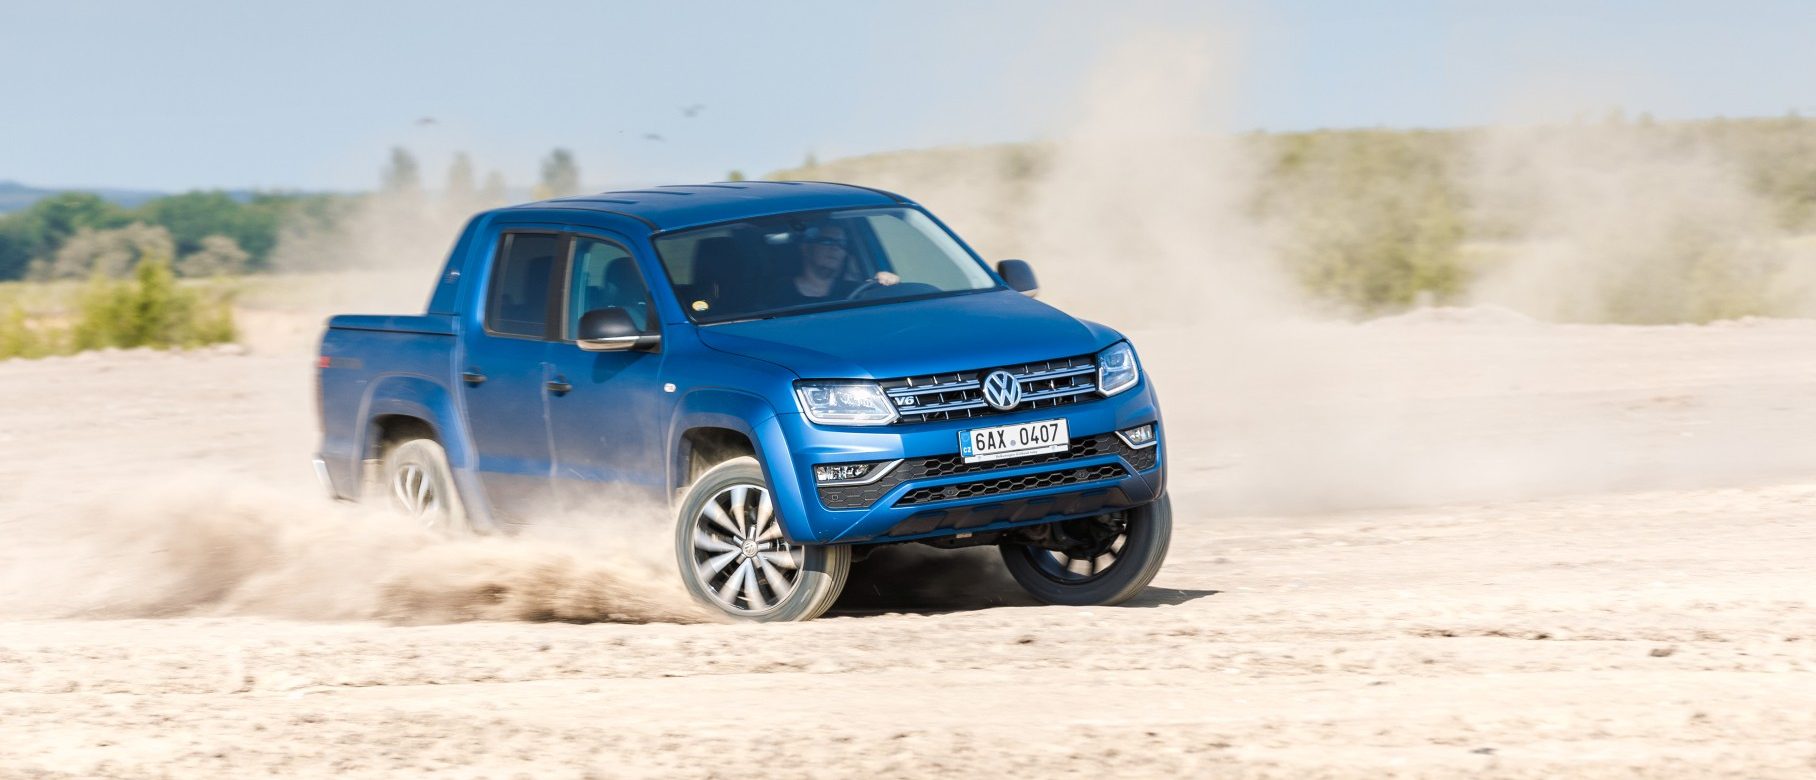 Redakční autotest: Volkswagen Amarok je dříč s luxusní výbavou